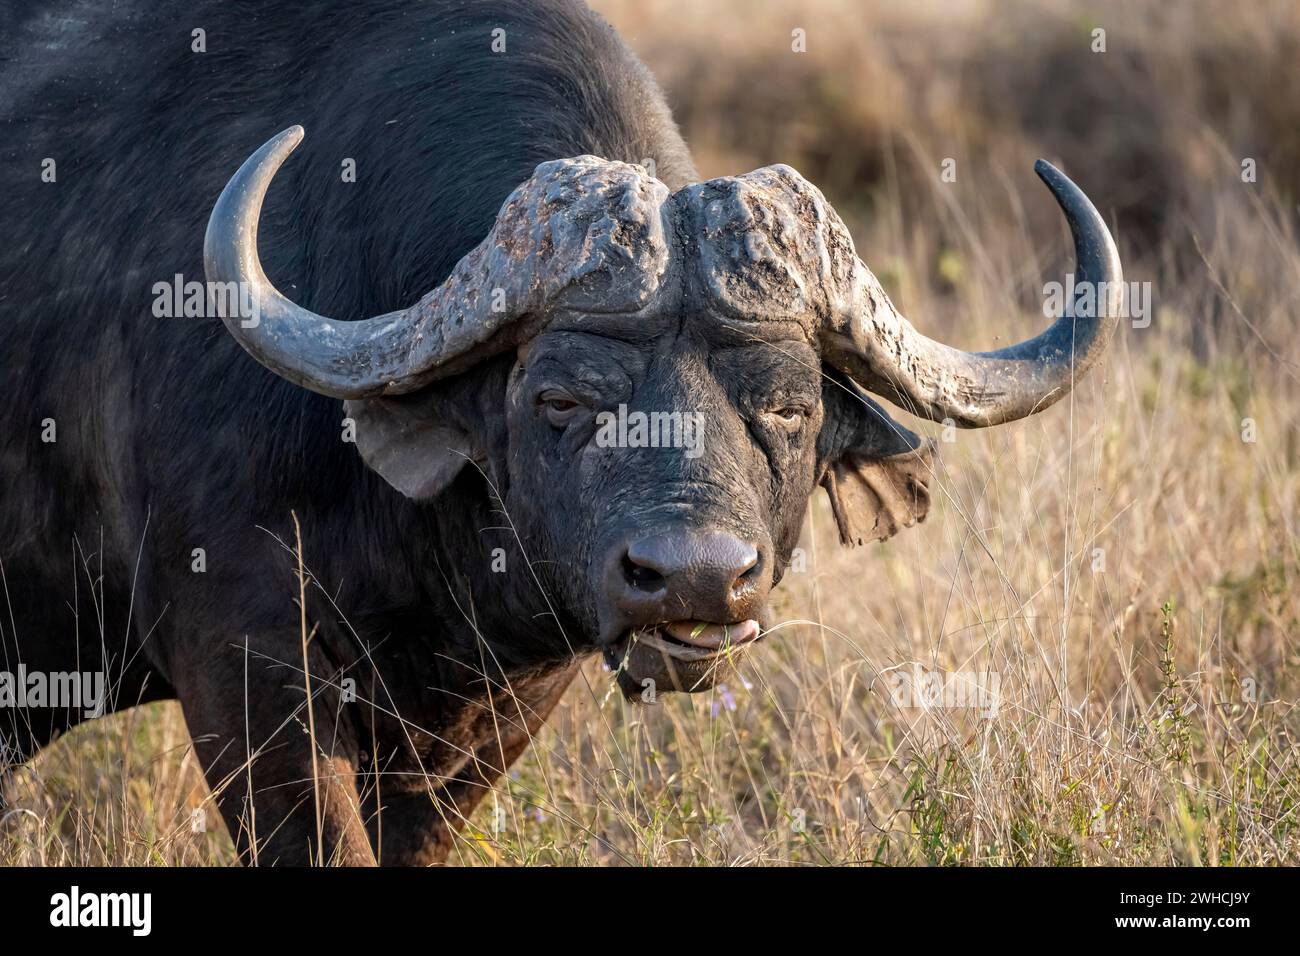 Bufalo africano (Syncerus caffer caffer) con erba in bocca, toro nella savana africana, ritratto di animali, Kruger National Park, Sudafrica Foto Stock